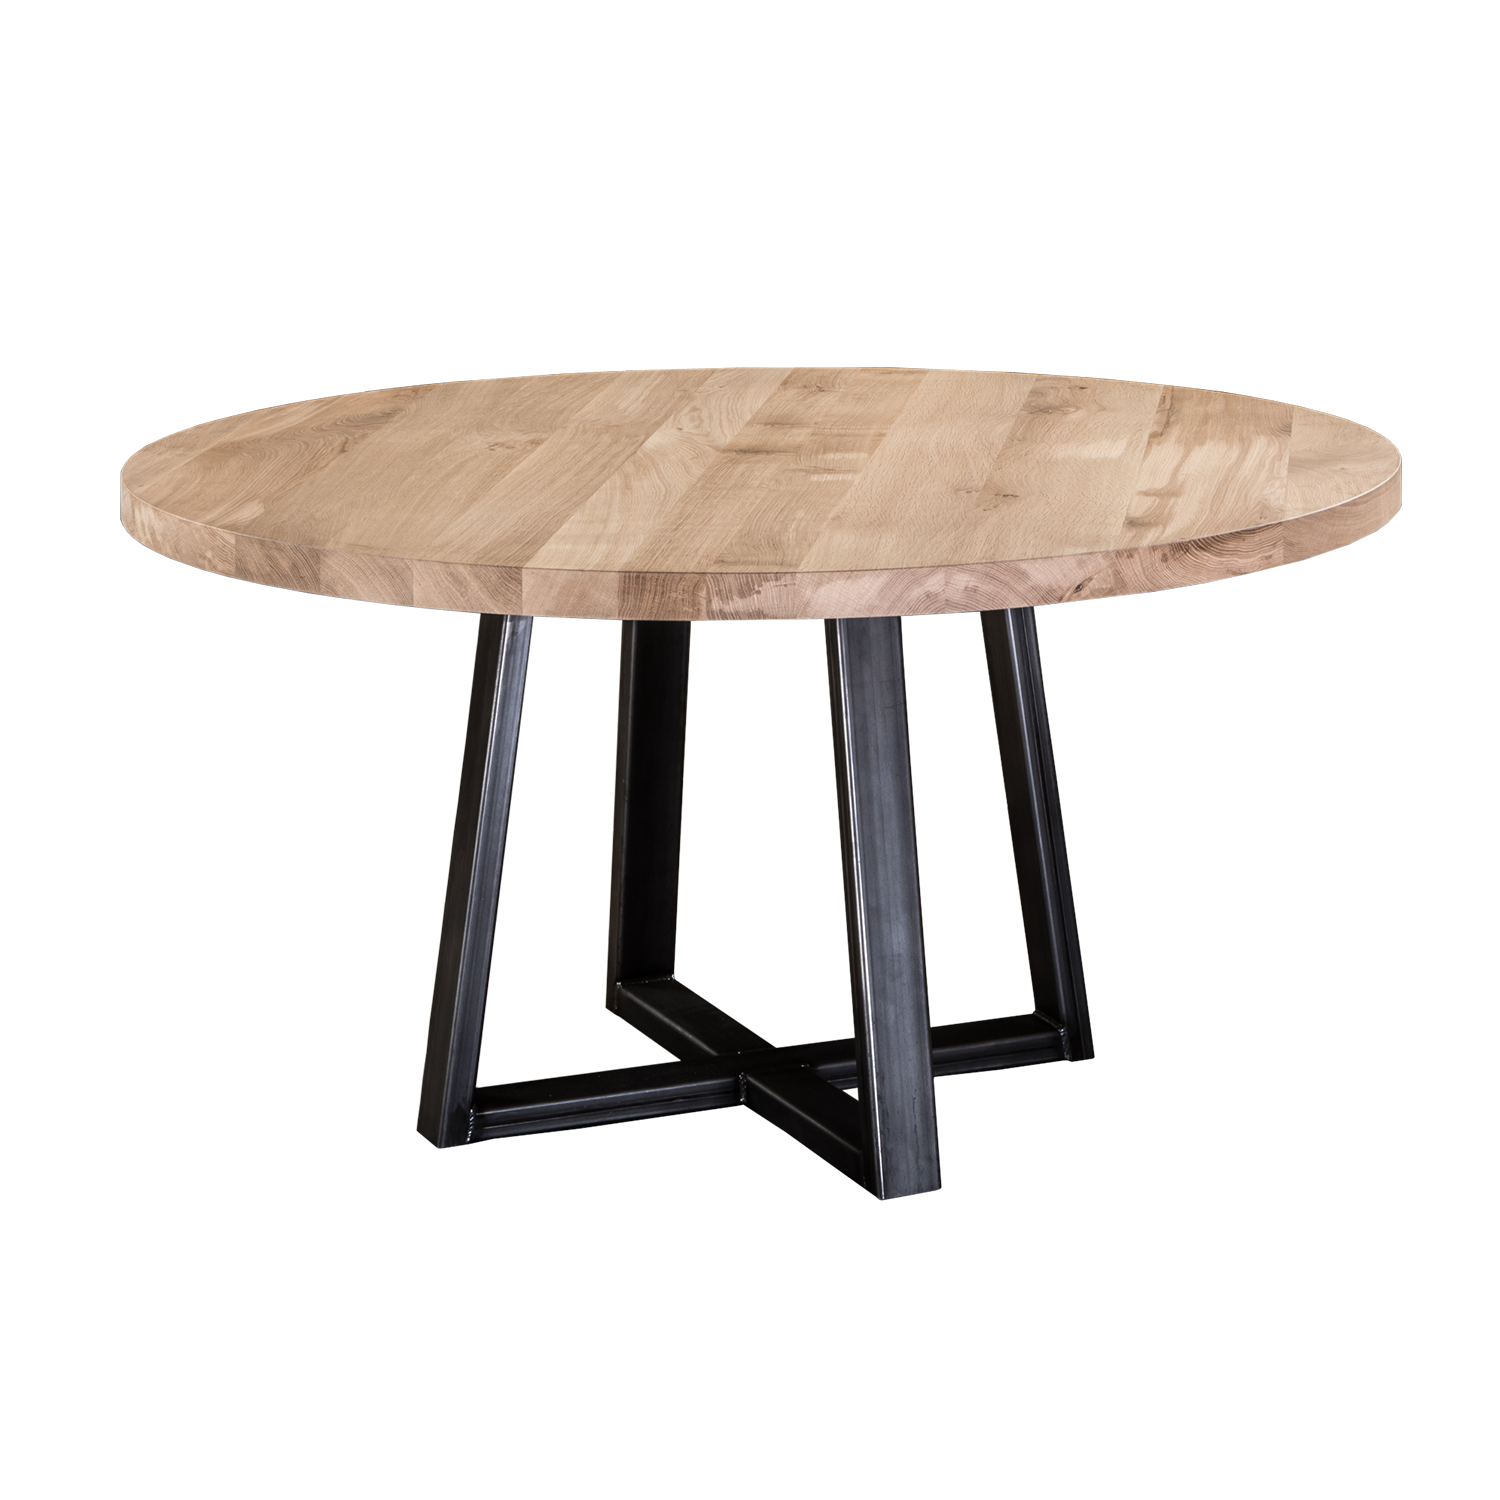 Столик круглый. Круглый деревянный стол. Стол круглый дерево. Деревянный столик без фона. Столик пнг